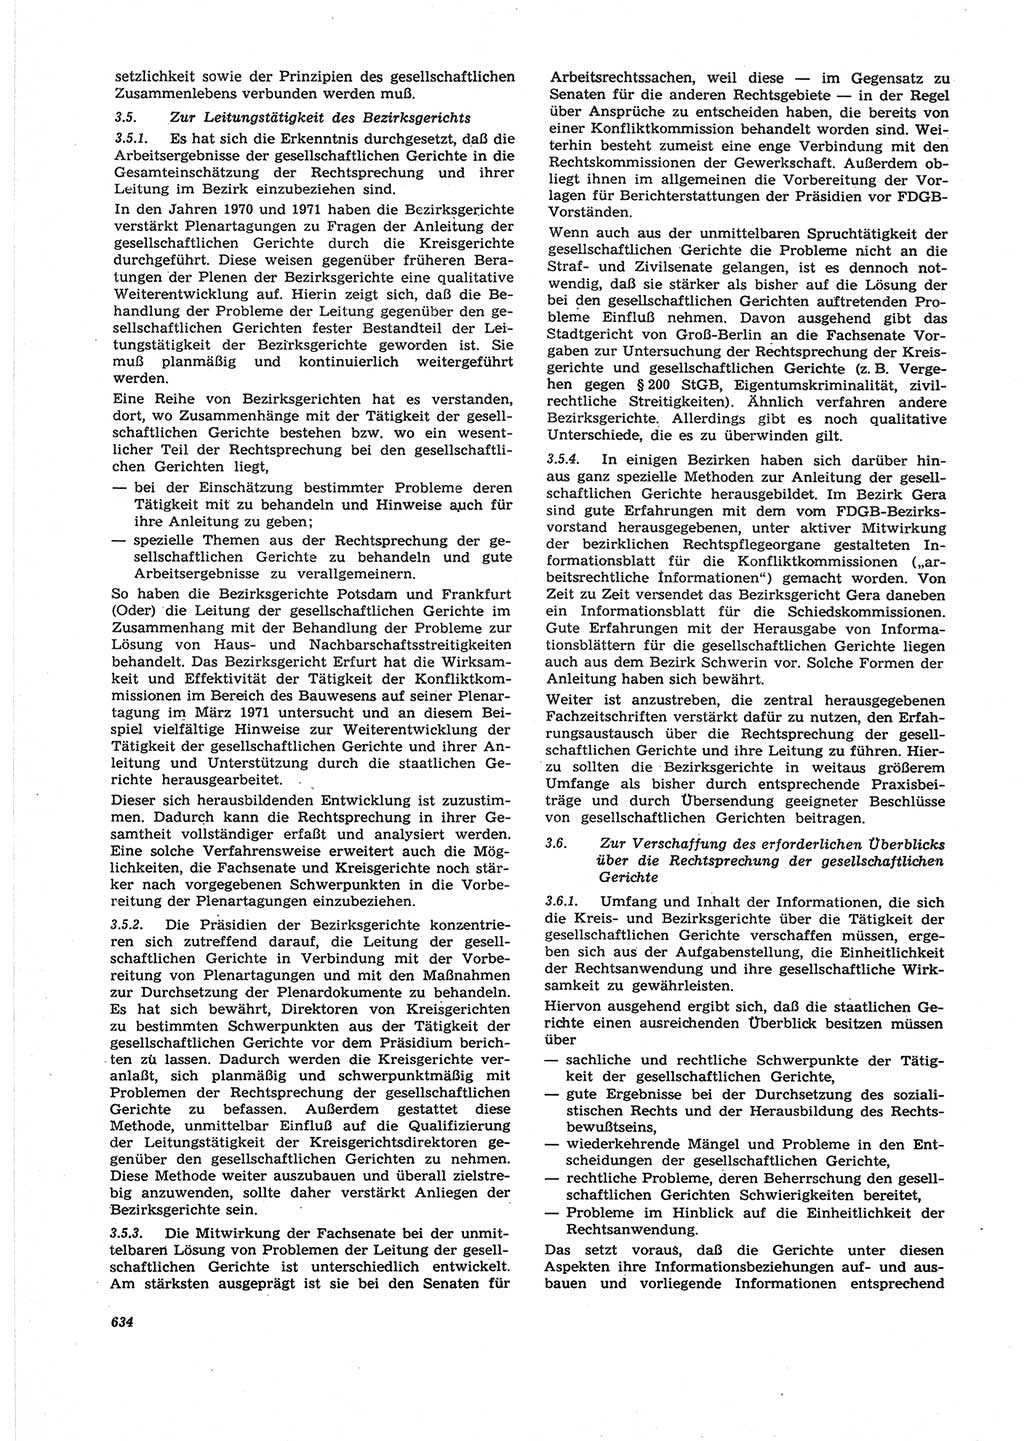 Neue Justiz (NJ), Zeitschrift für Recht und Rechtswissenschaft [Deutsche Demokratische Republik (DDR)], 25. Jahrgang 1971, Seite 634 (NJ DDR 1971, S. 634)